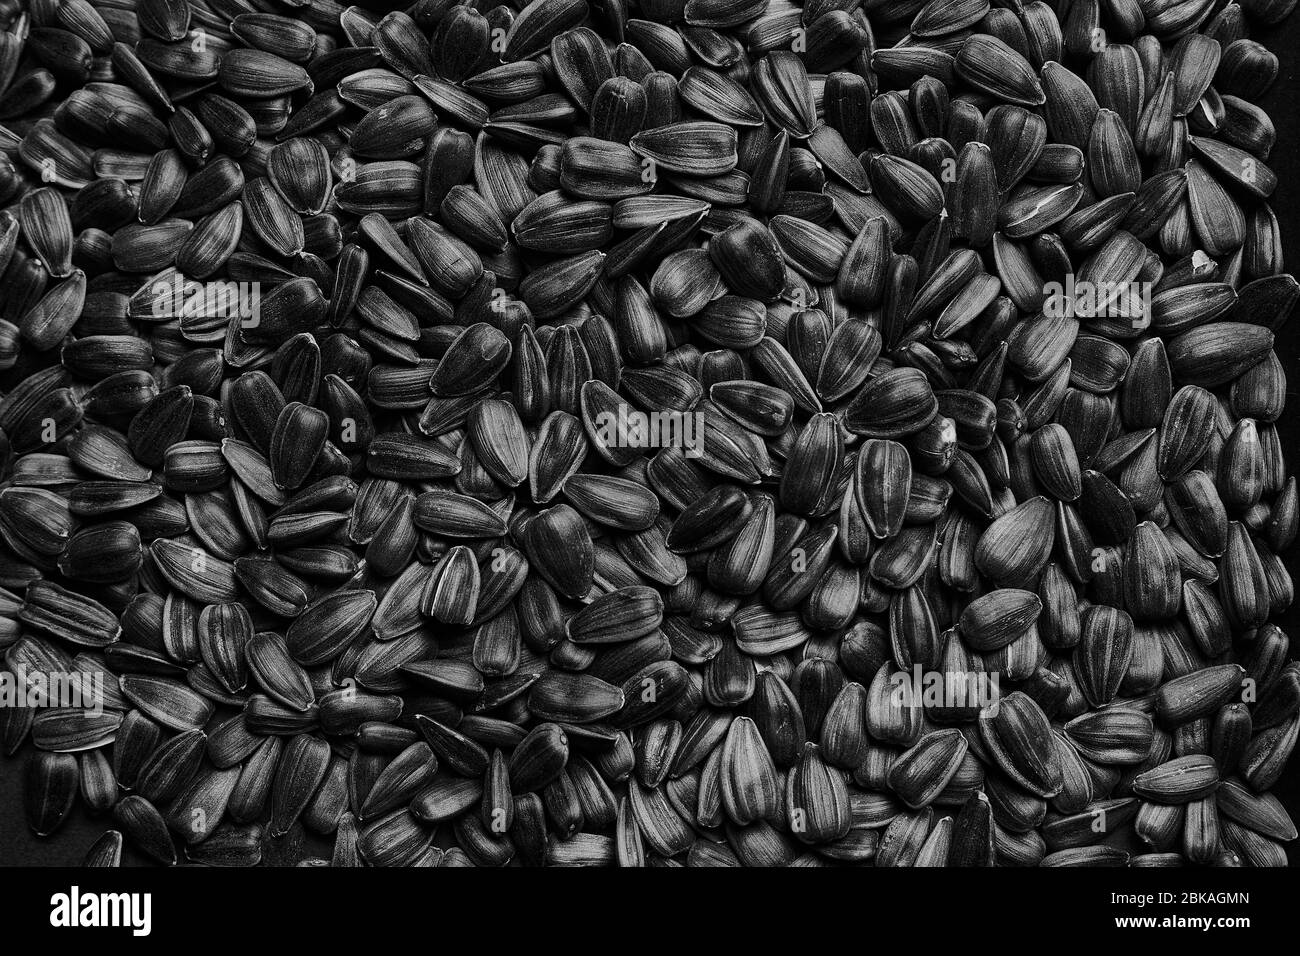 Sonnenblumenkerne Textur Hintergrund. Samen in einer schwarzen Schale, Muster. Nahaufnahme Foto von einer Menge Samen. Stockfoto